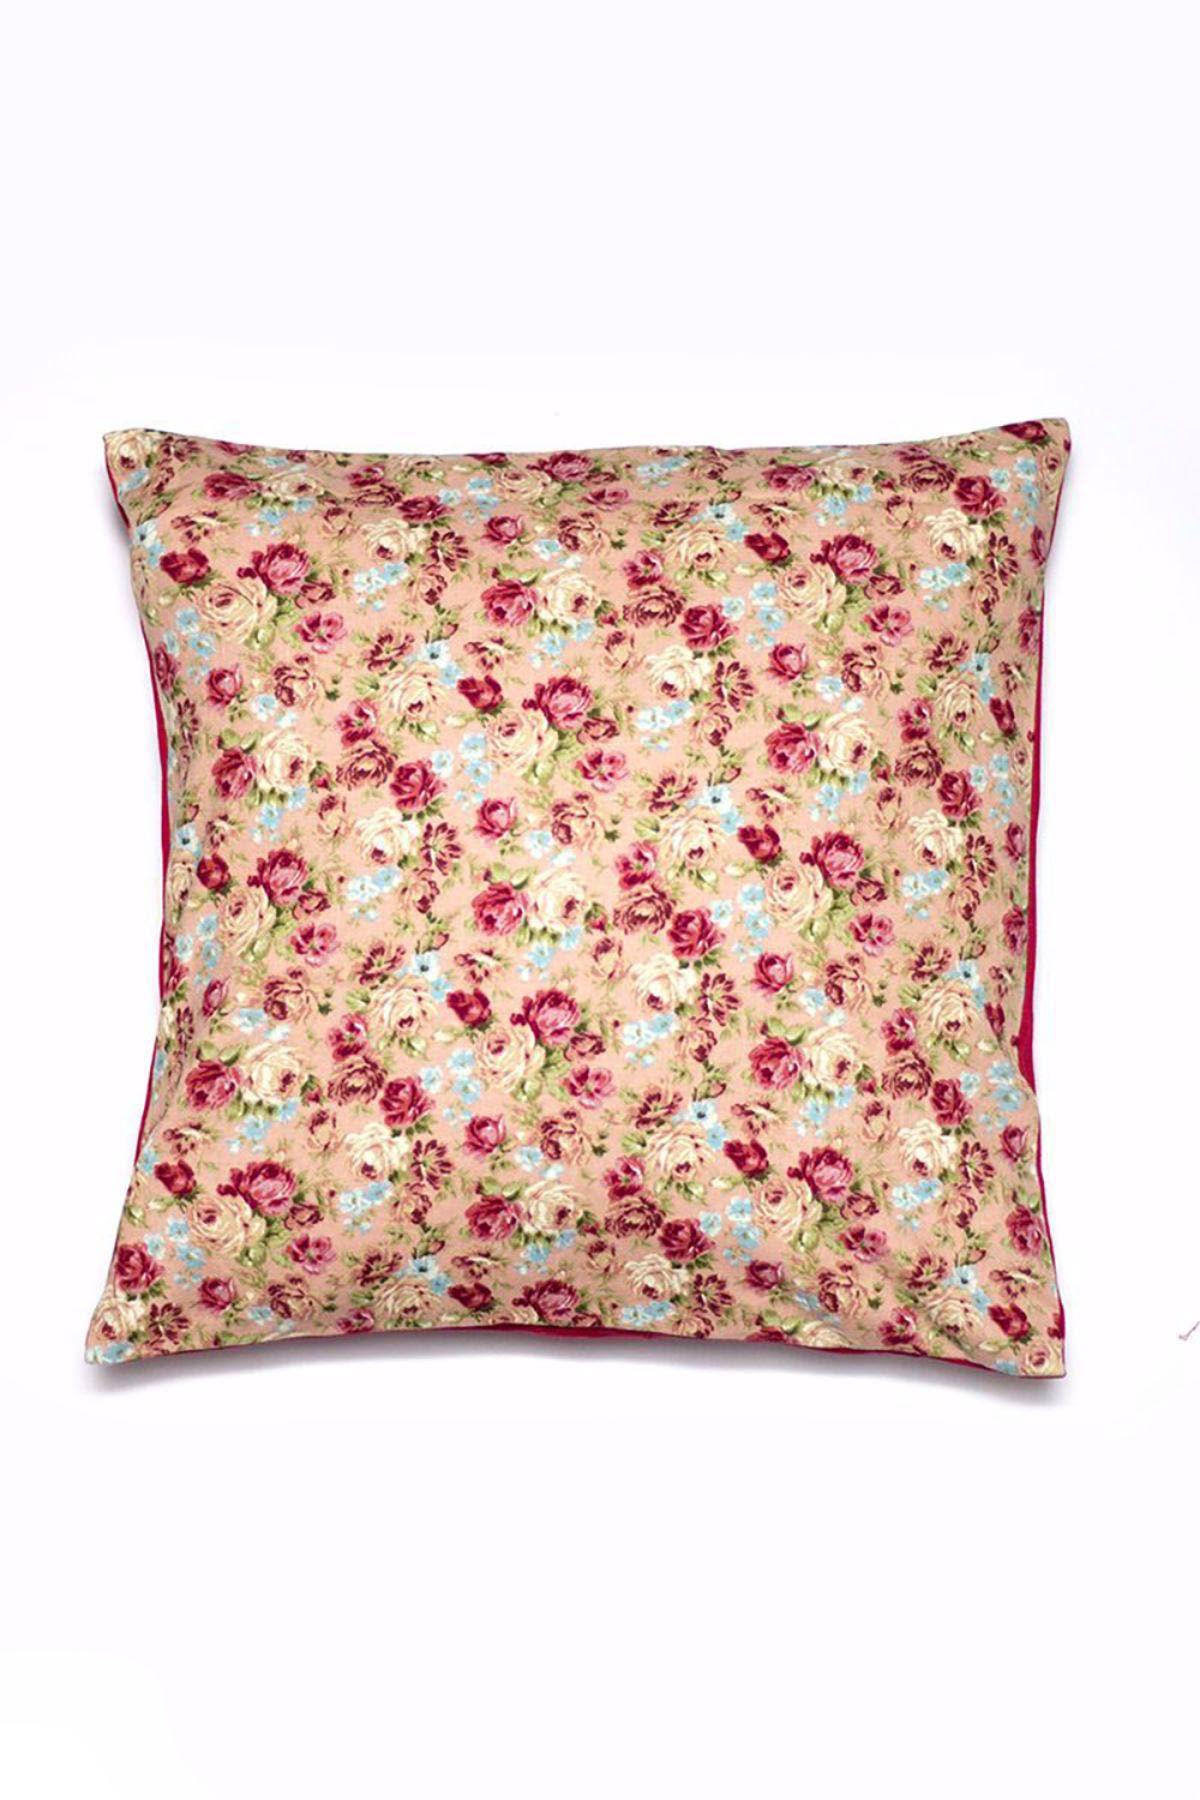 Flower Power Cushion Cover - Peach